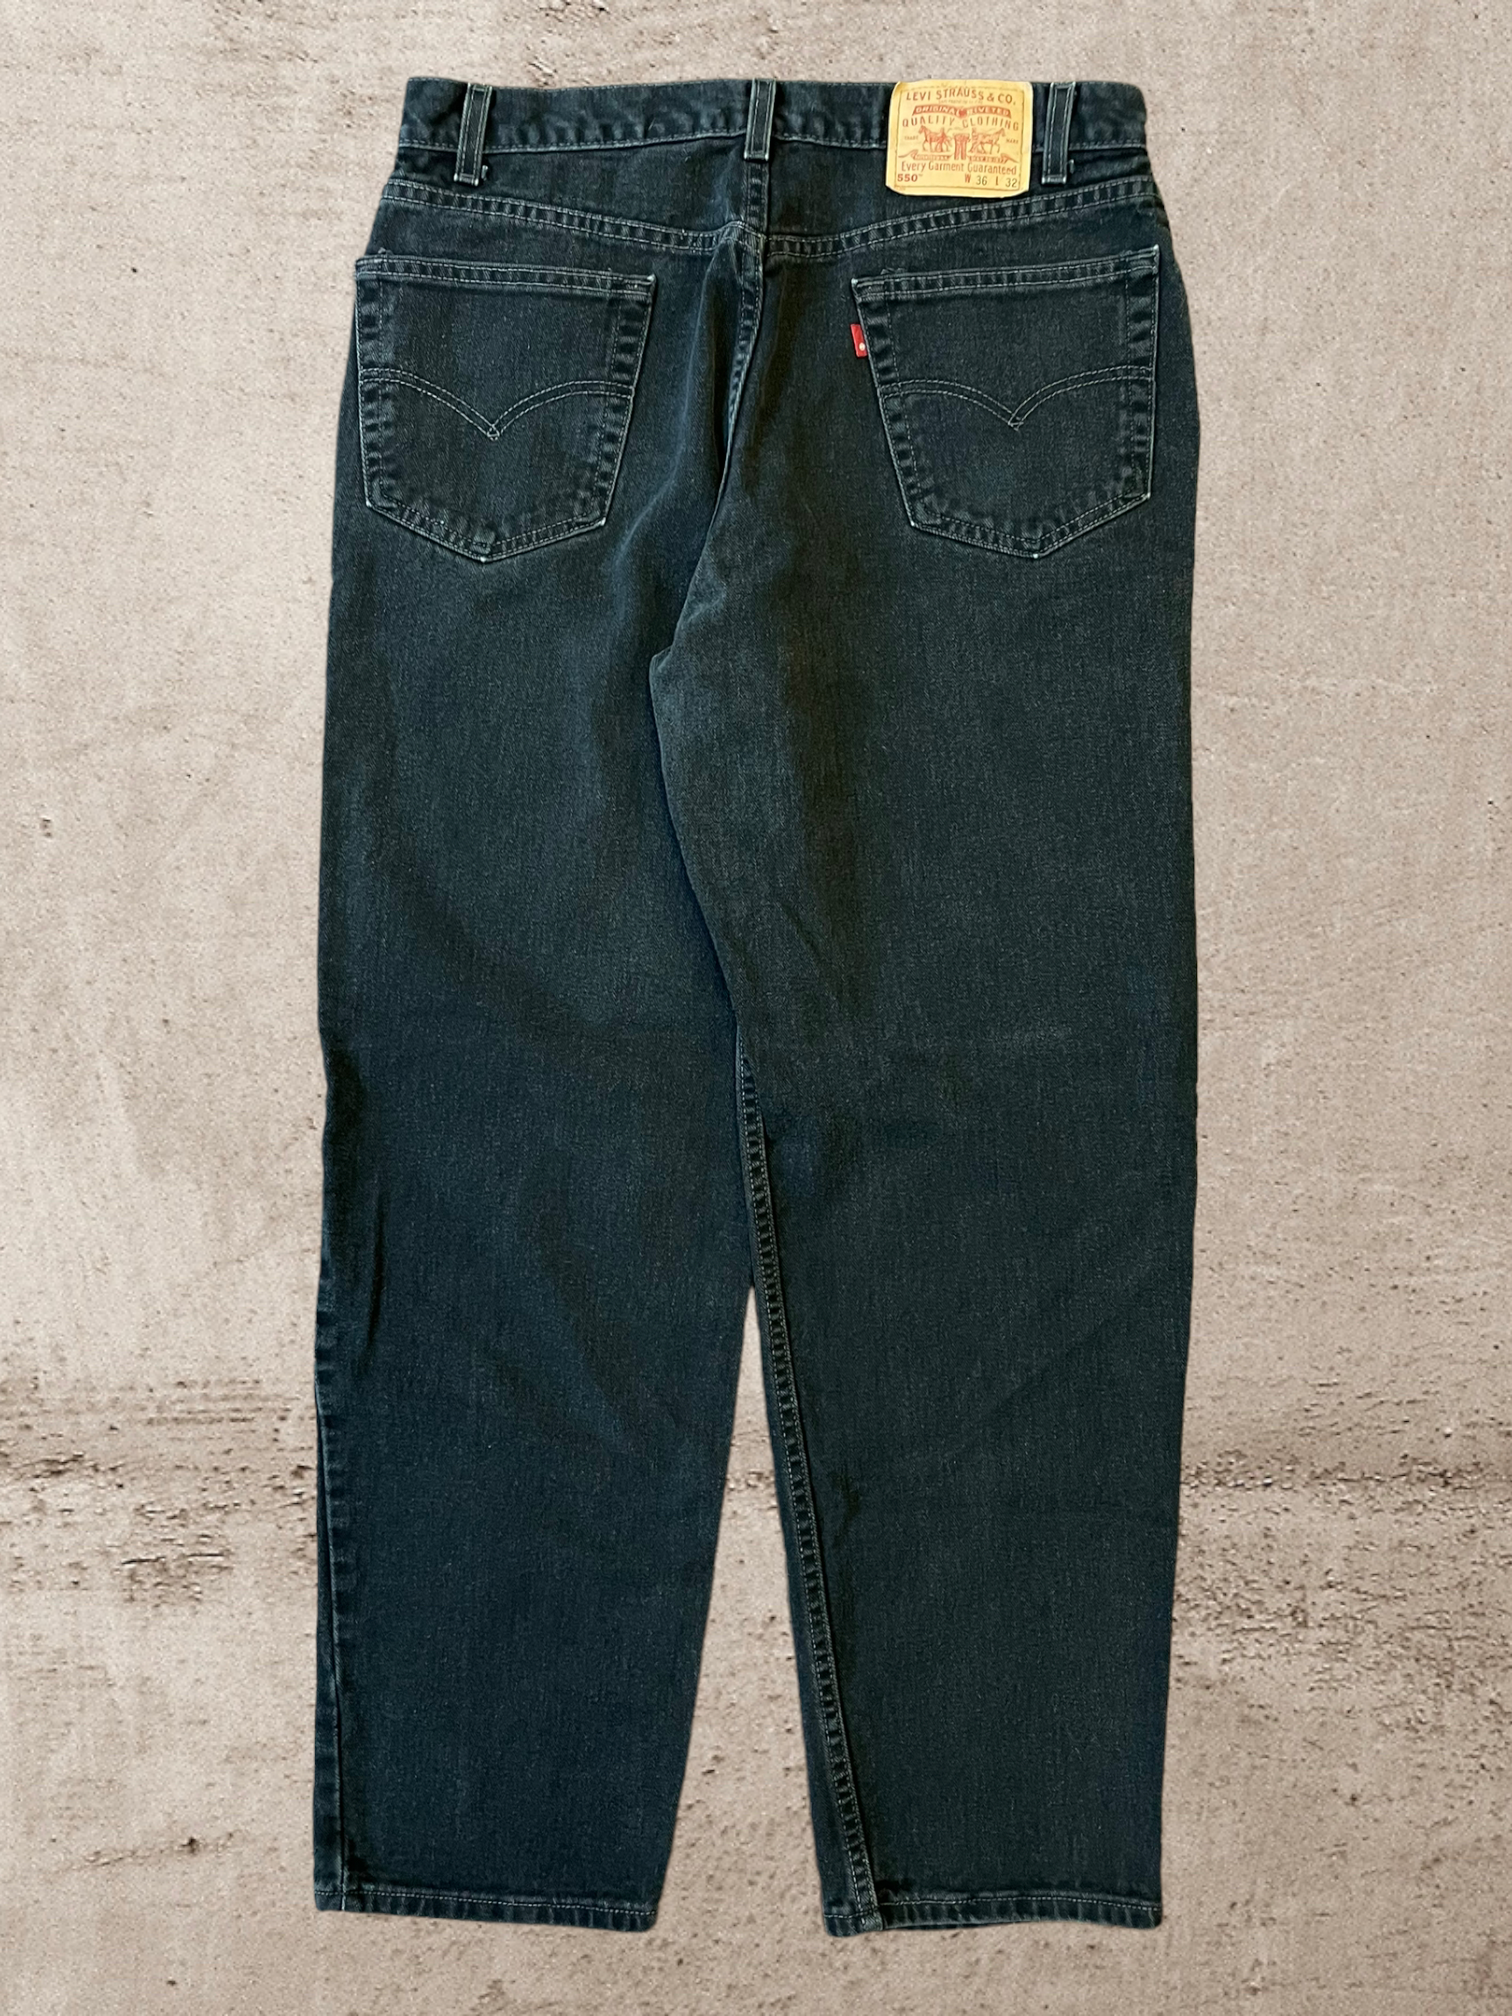 90s Levis 550 Baggy Jeans - 34x30